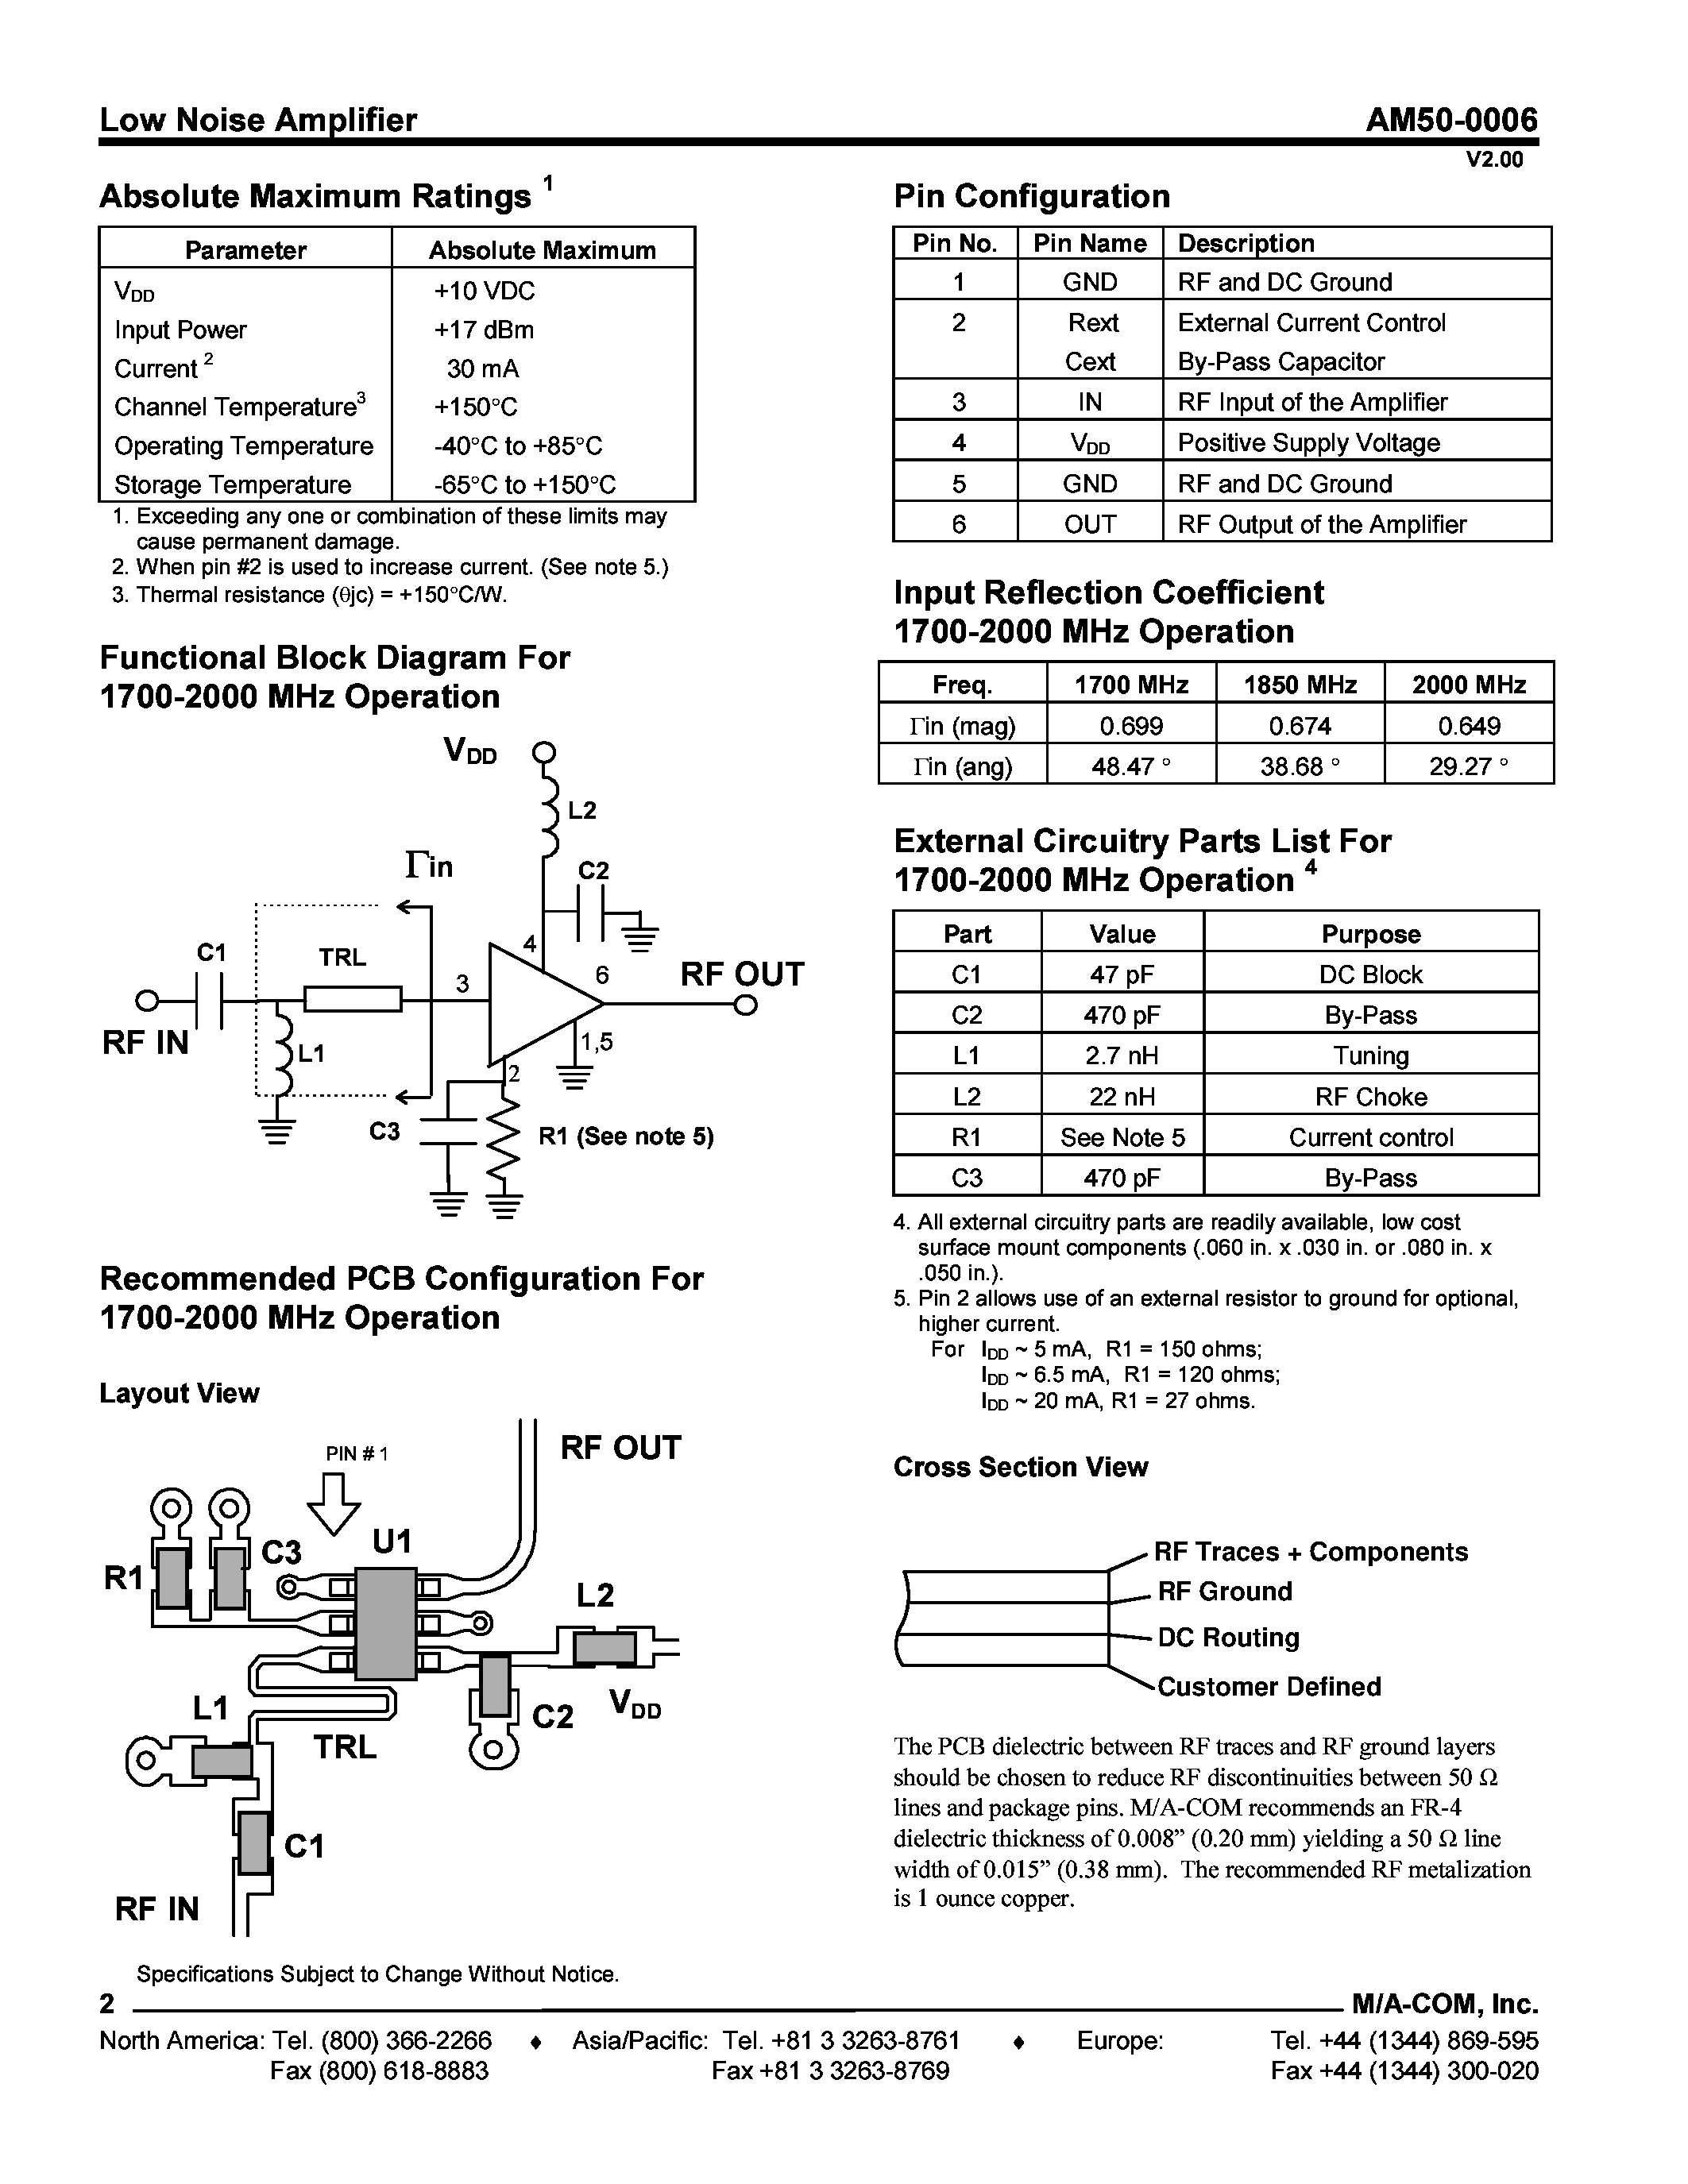 Даташит AM50-0006PCS - Low Noise Amplifier 1400 - 2000 MHz страница 2